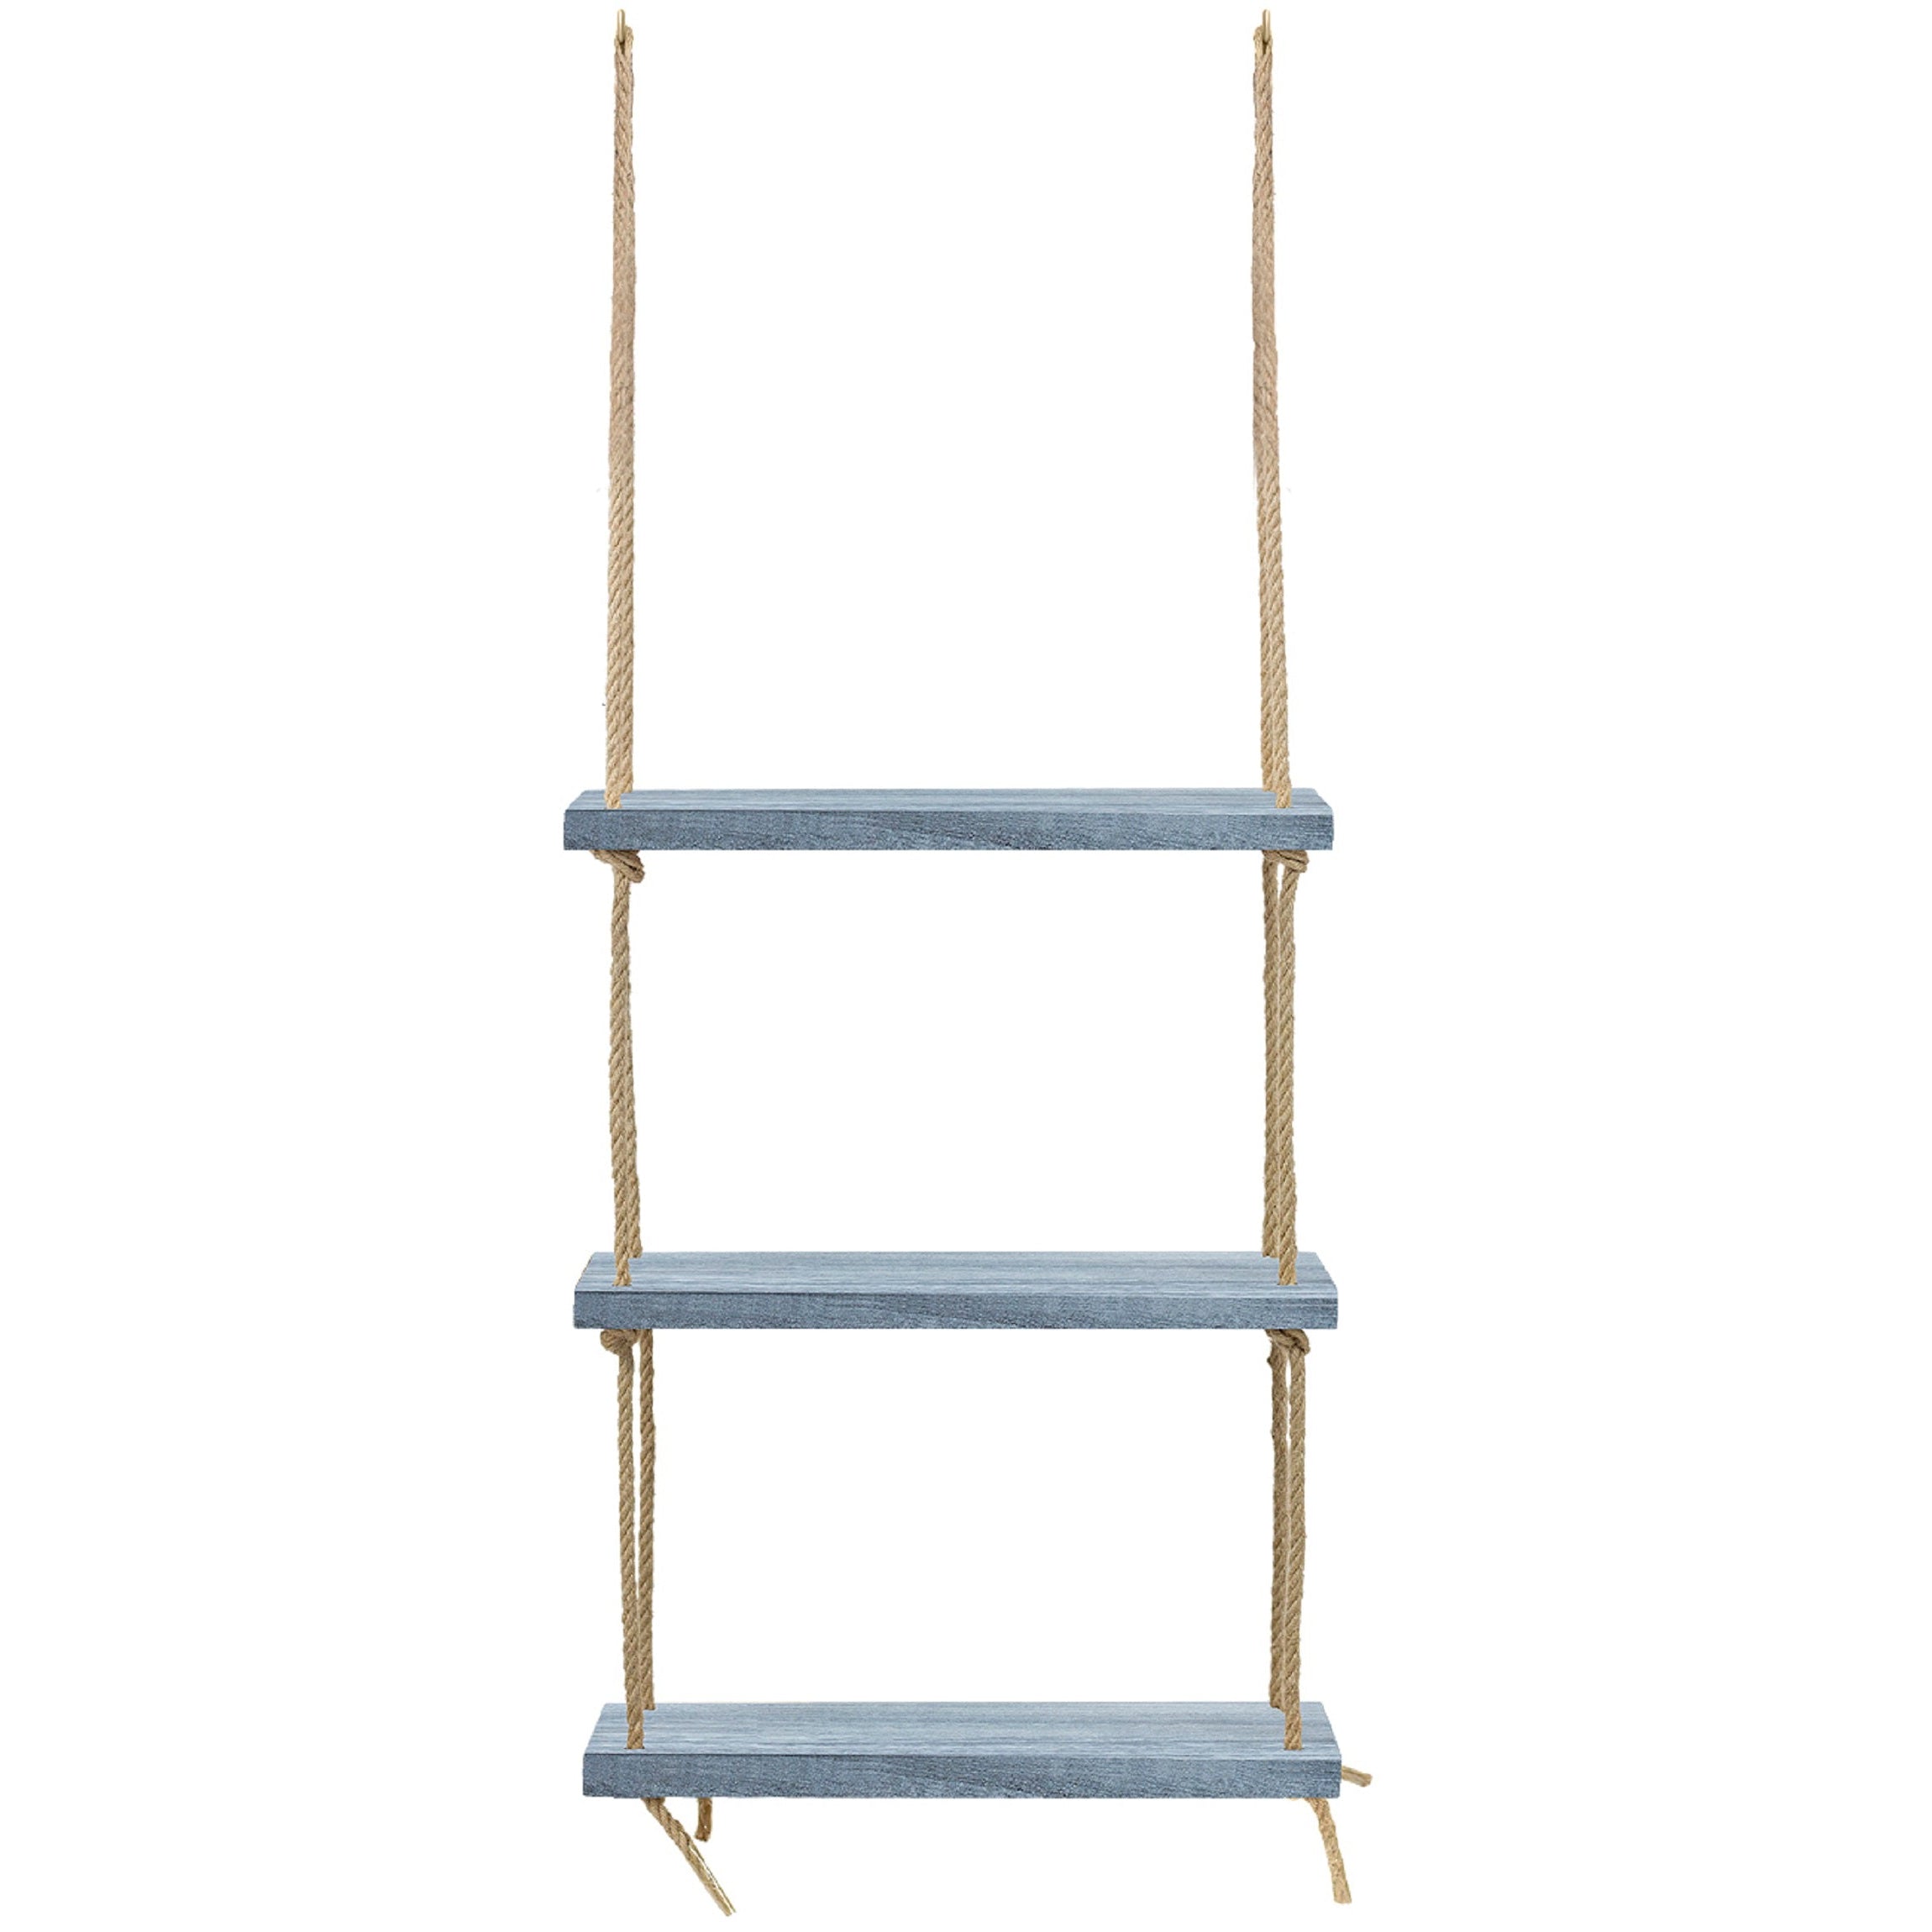 Rustic Ladder Shelf Rope Hanging Ladder Shelf Farmhouse Bathroom